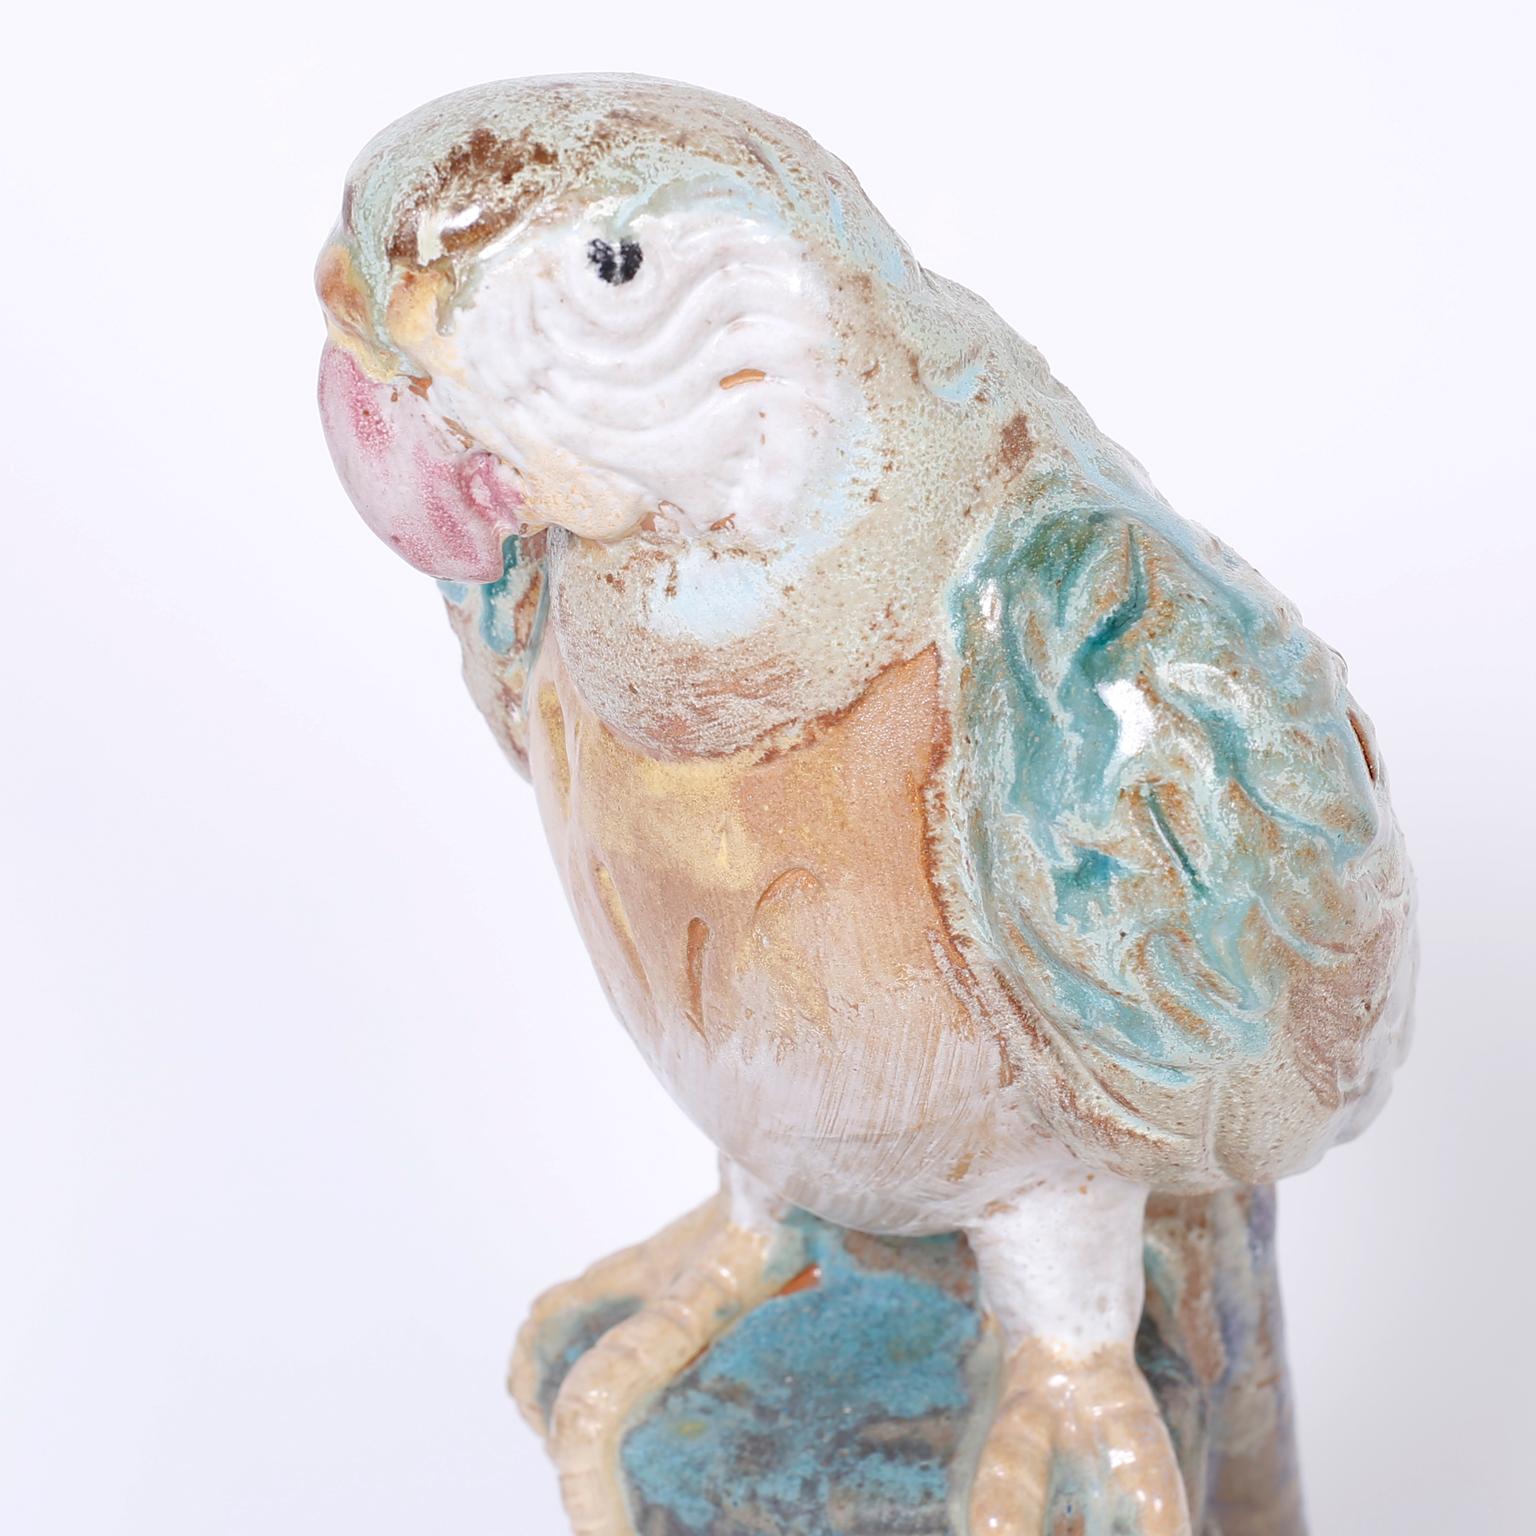 Lebensgroßer Terrakotta-Papagei oder -Vogel mit fragendem Gesichtsausdruck, verziert und glasiert mit weichen, gedämpften Farben.